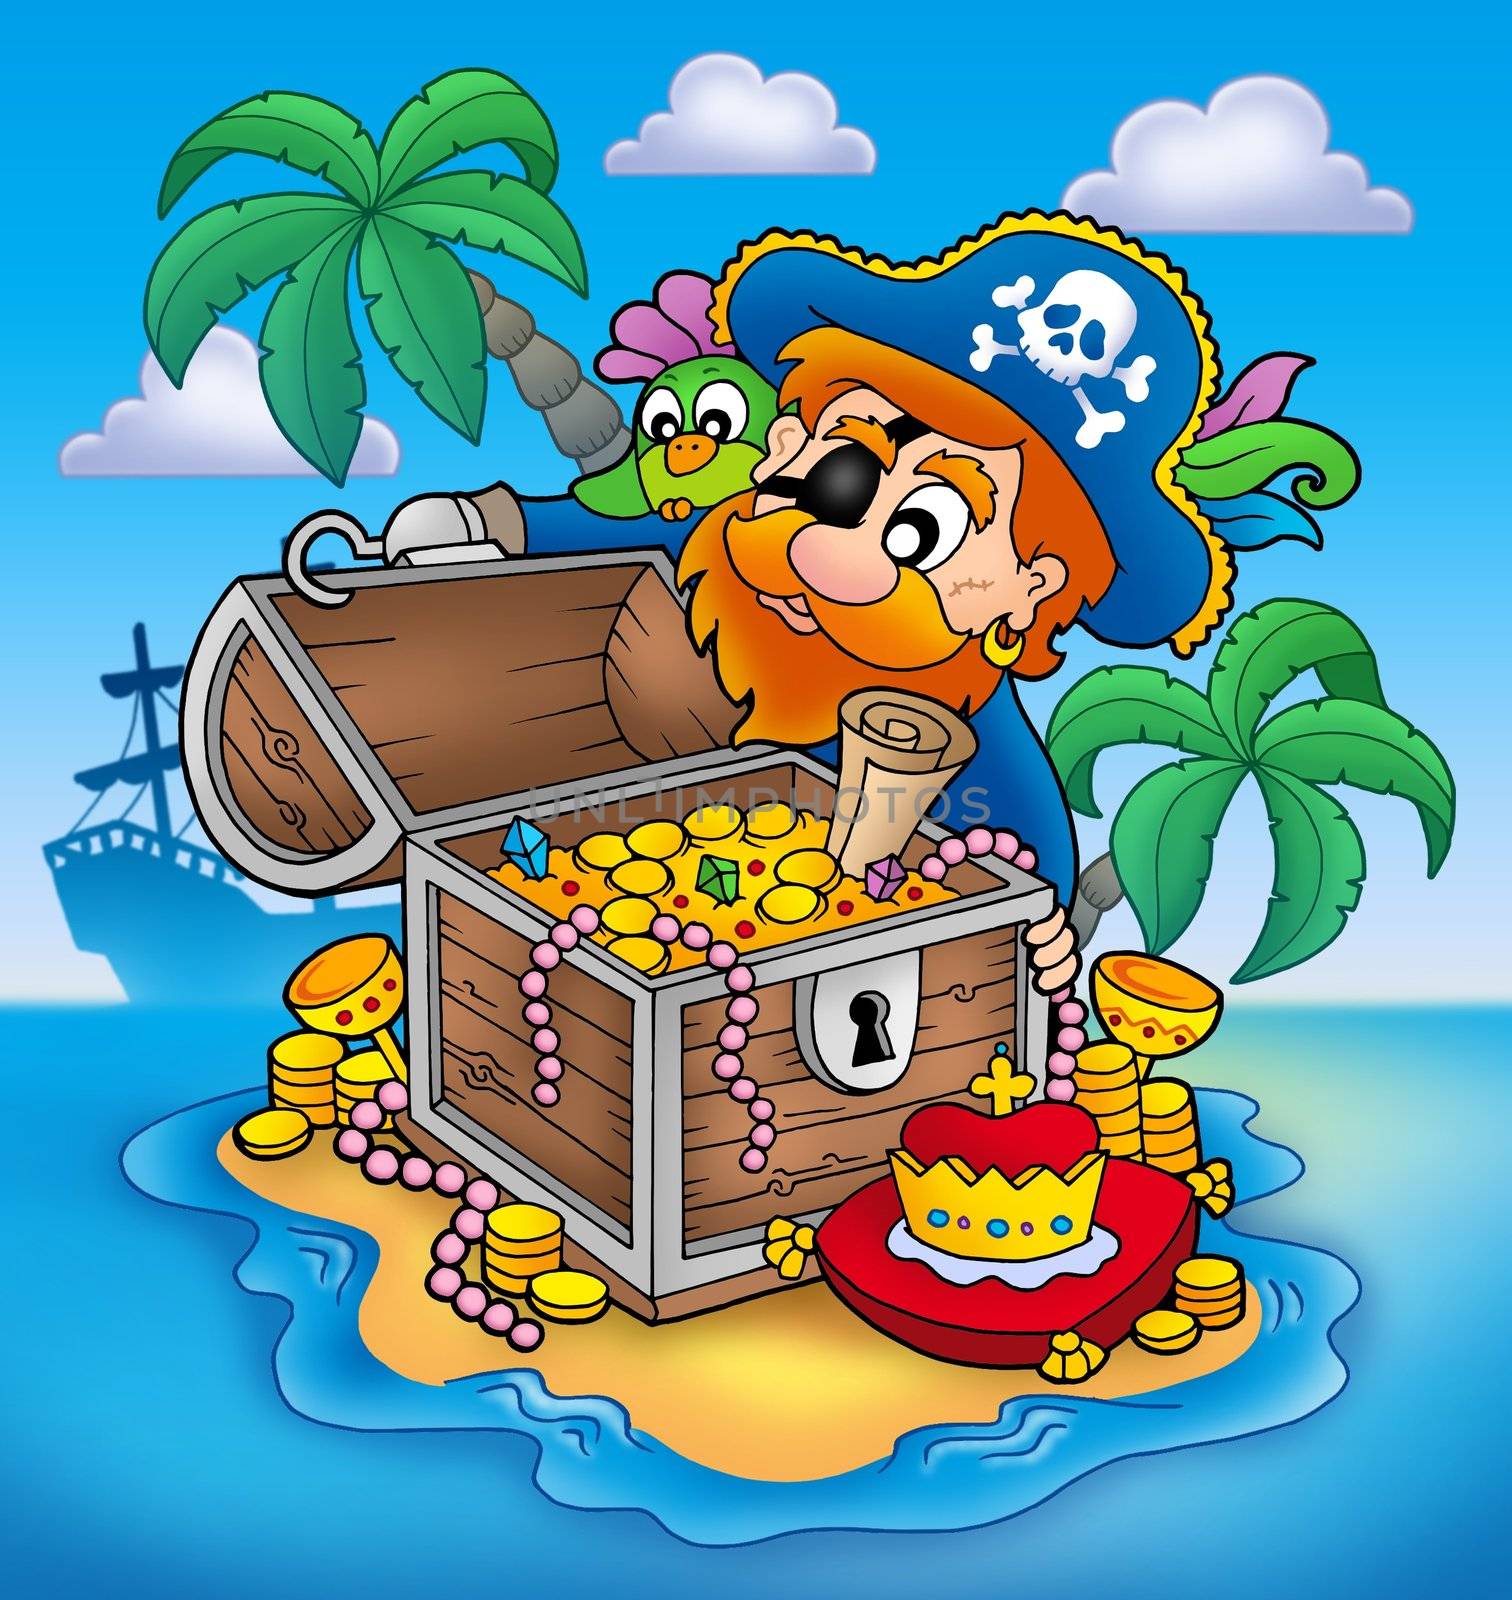 Pirate and treasure - color illustration.